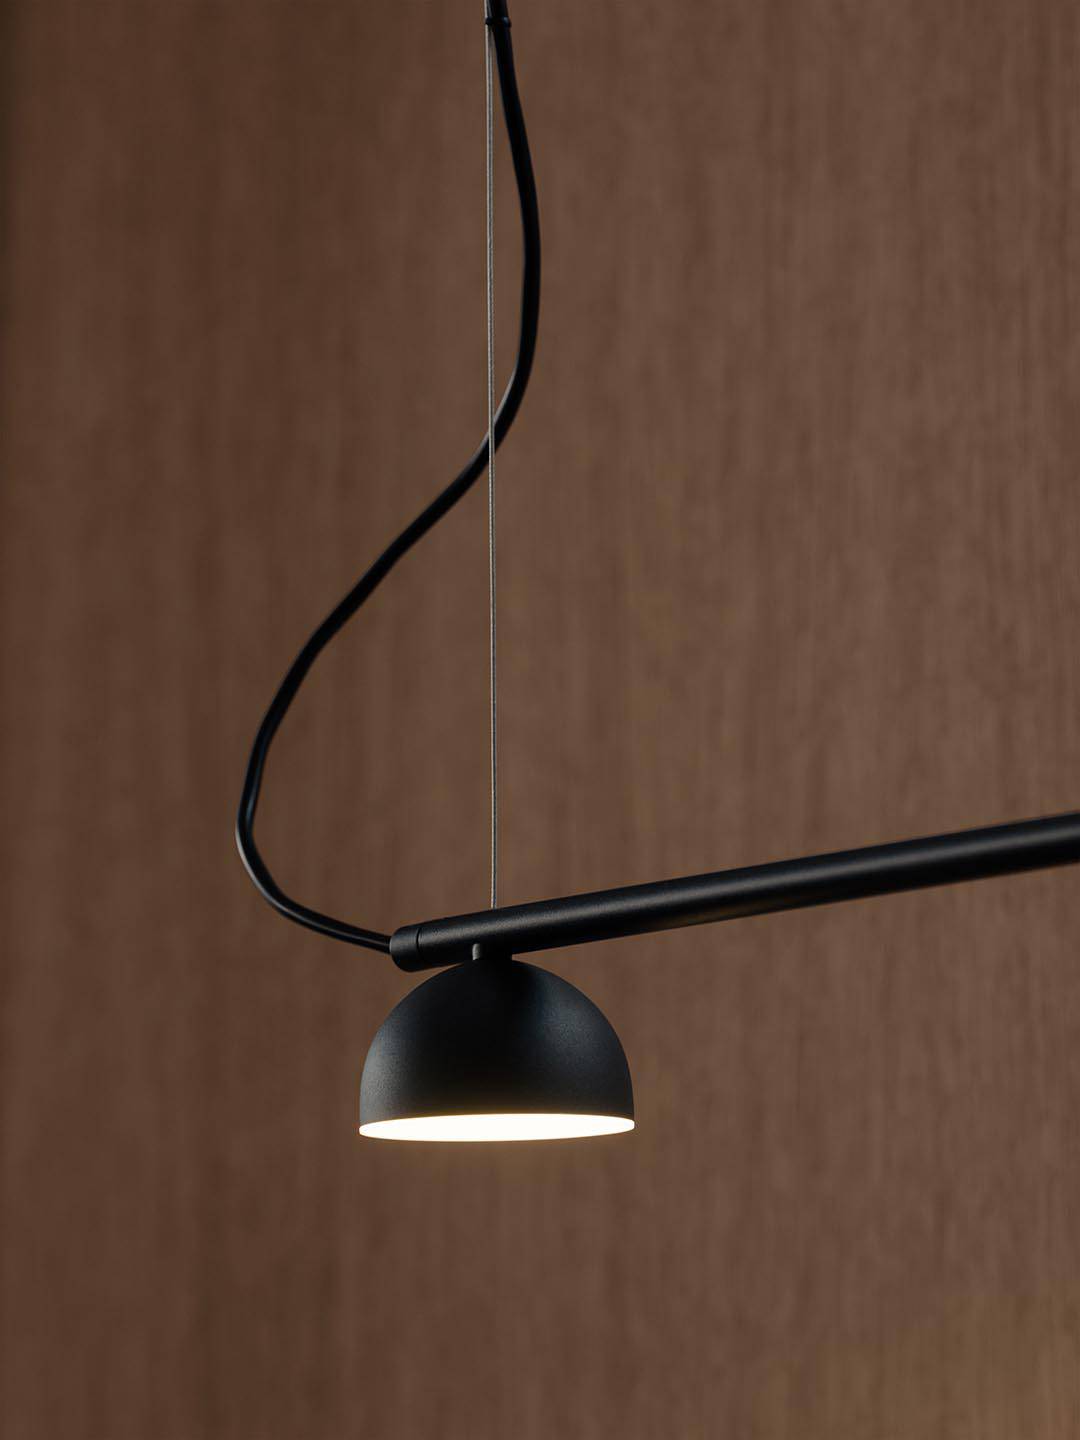 Металлический подвесной светильник Northern Blush Rail 3 черного цвета в светлом помещении